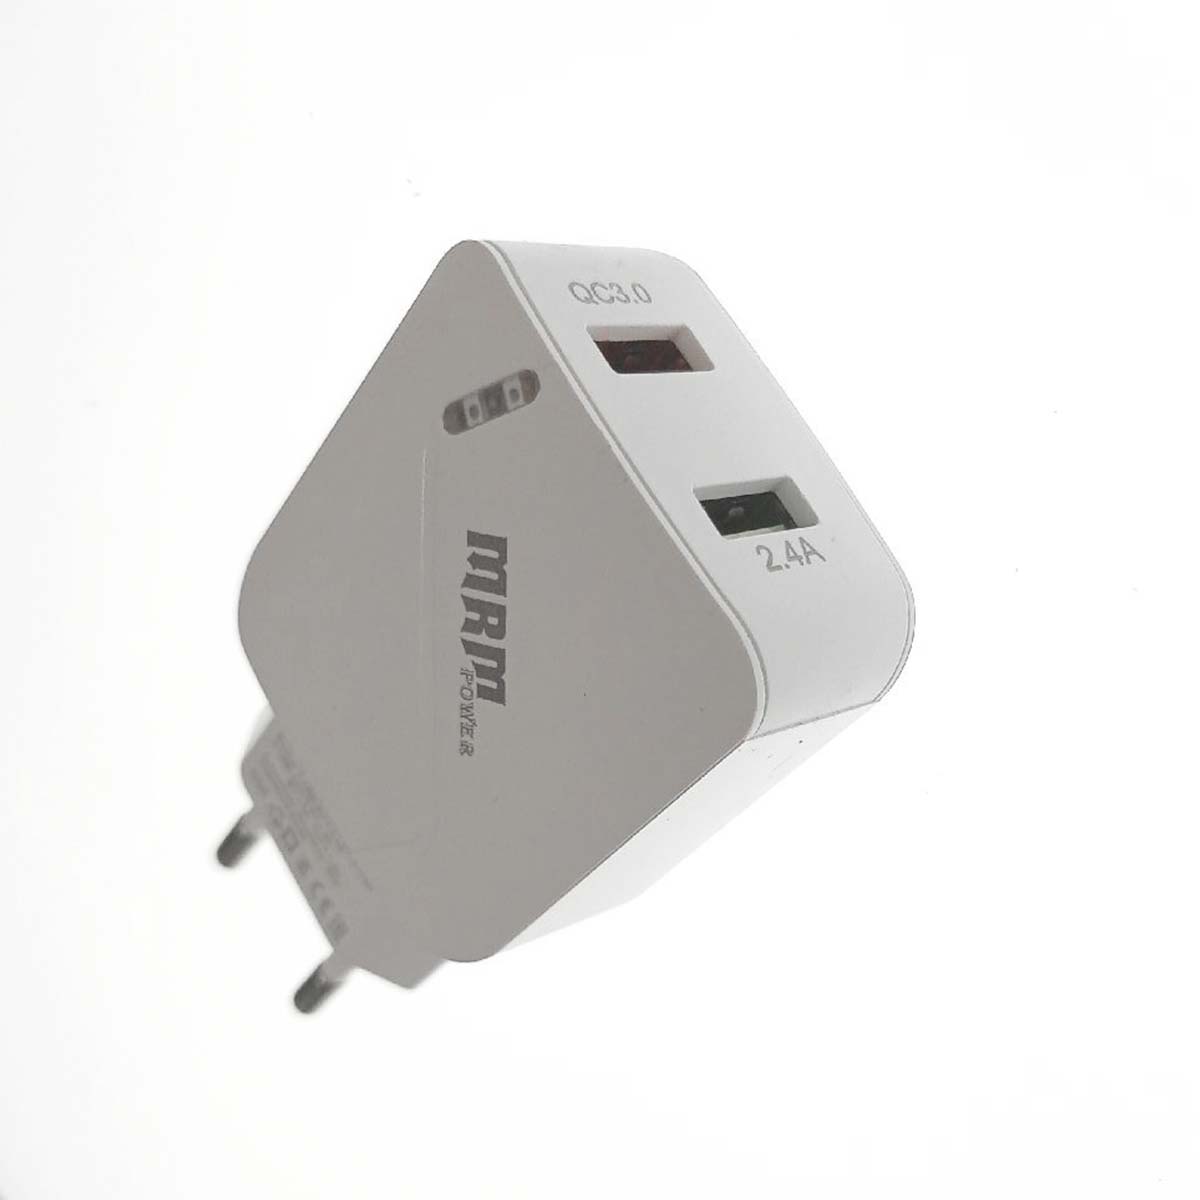 СЗУ (Сетевое зарядное устройство) MRM MR821C, 2.4A, QC 3.0, 2 USB, цвет белый